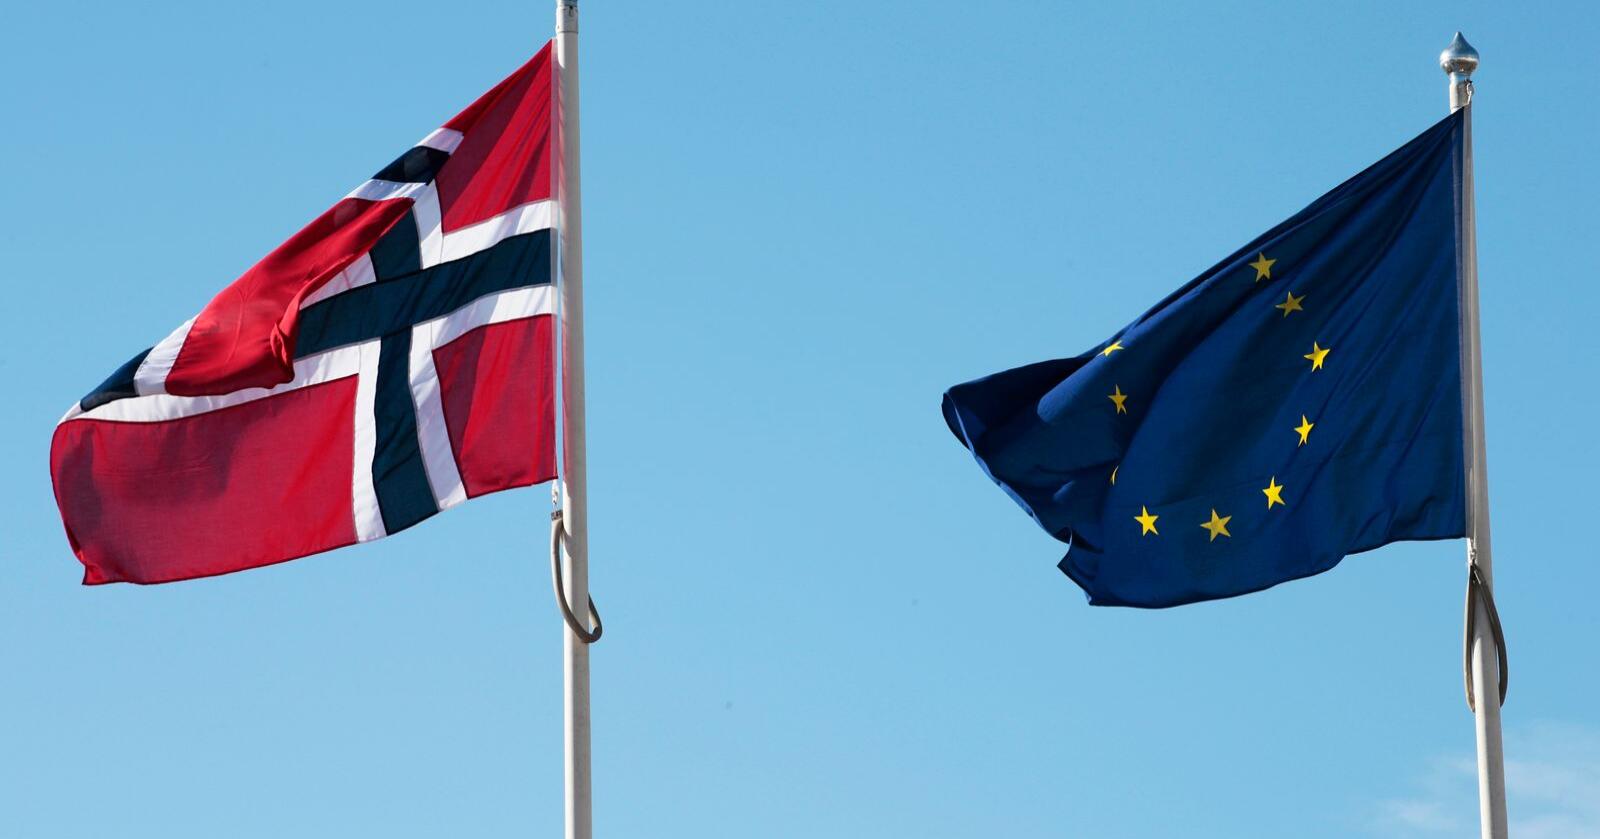 
Dersom vi er raske på ballen kan vi legge premissene for en ny samarbeidsform med EU og andre land i Europa, skriver Espen Thygesen. Foto: Lise Åserud / NTB